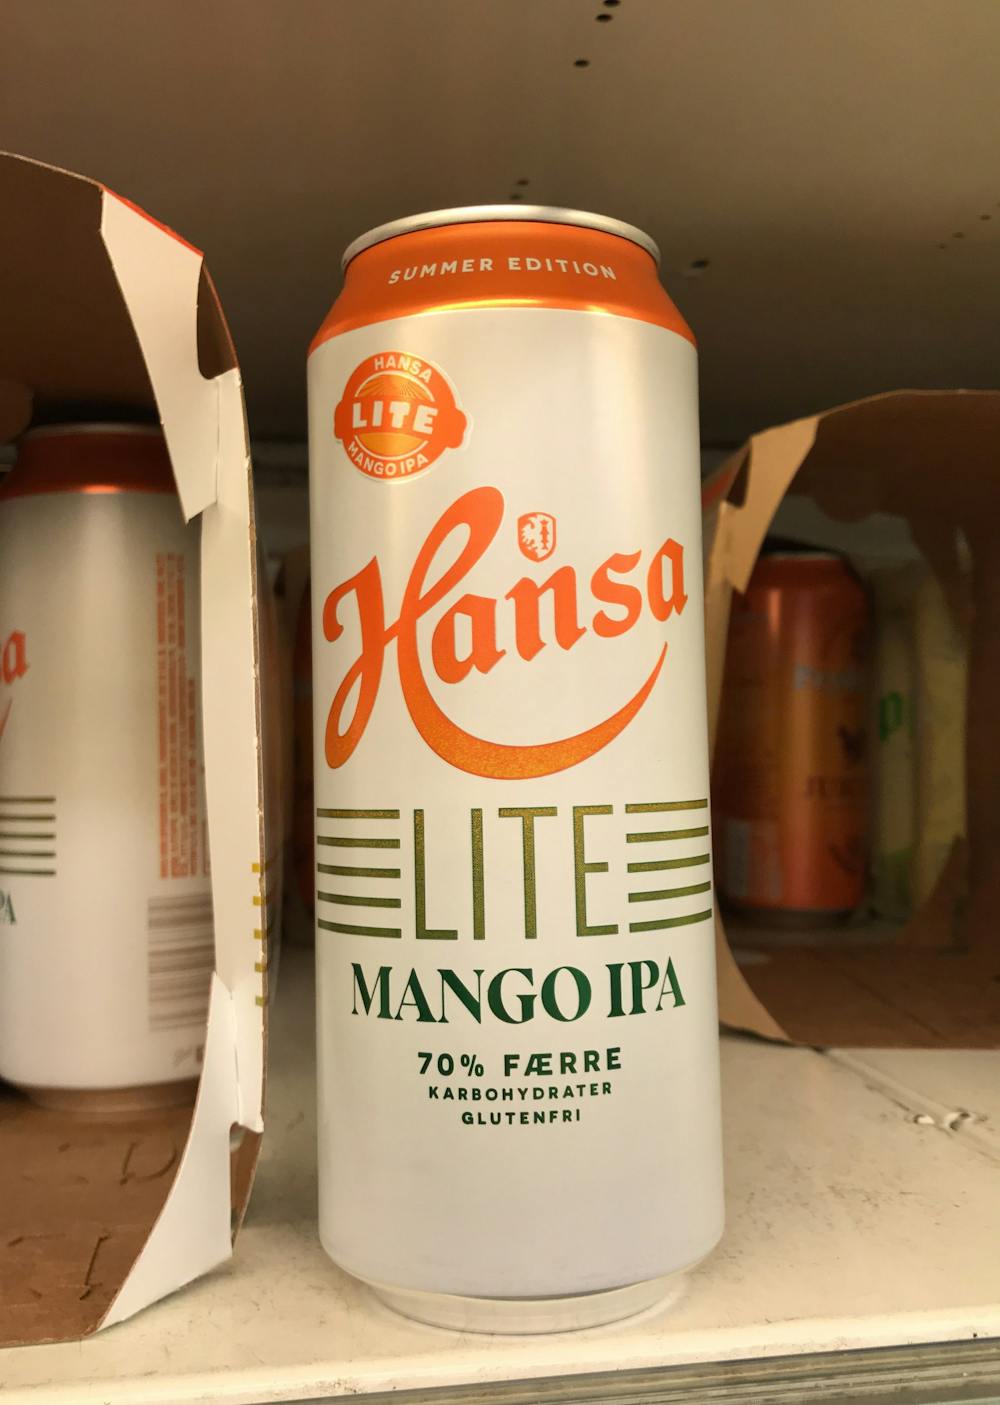 Mango IPA, LITE, Hansa